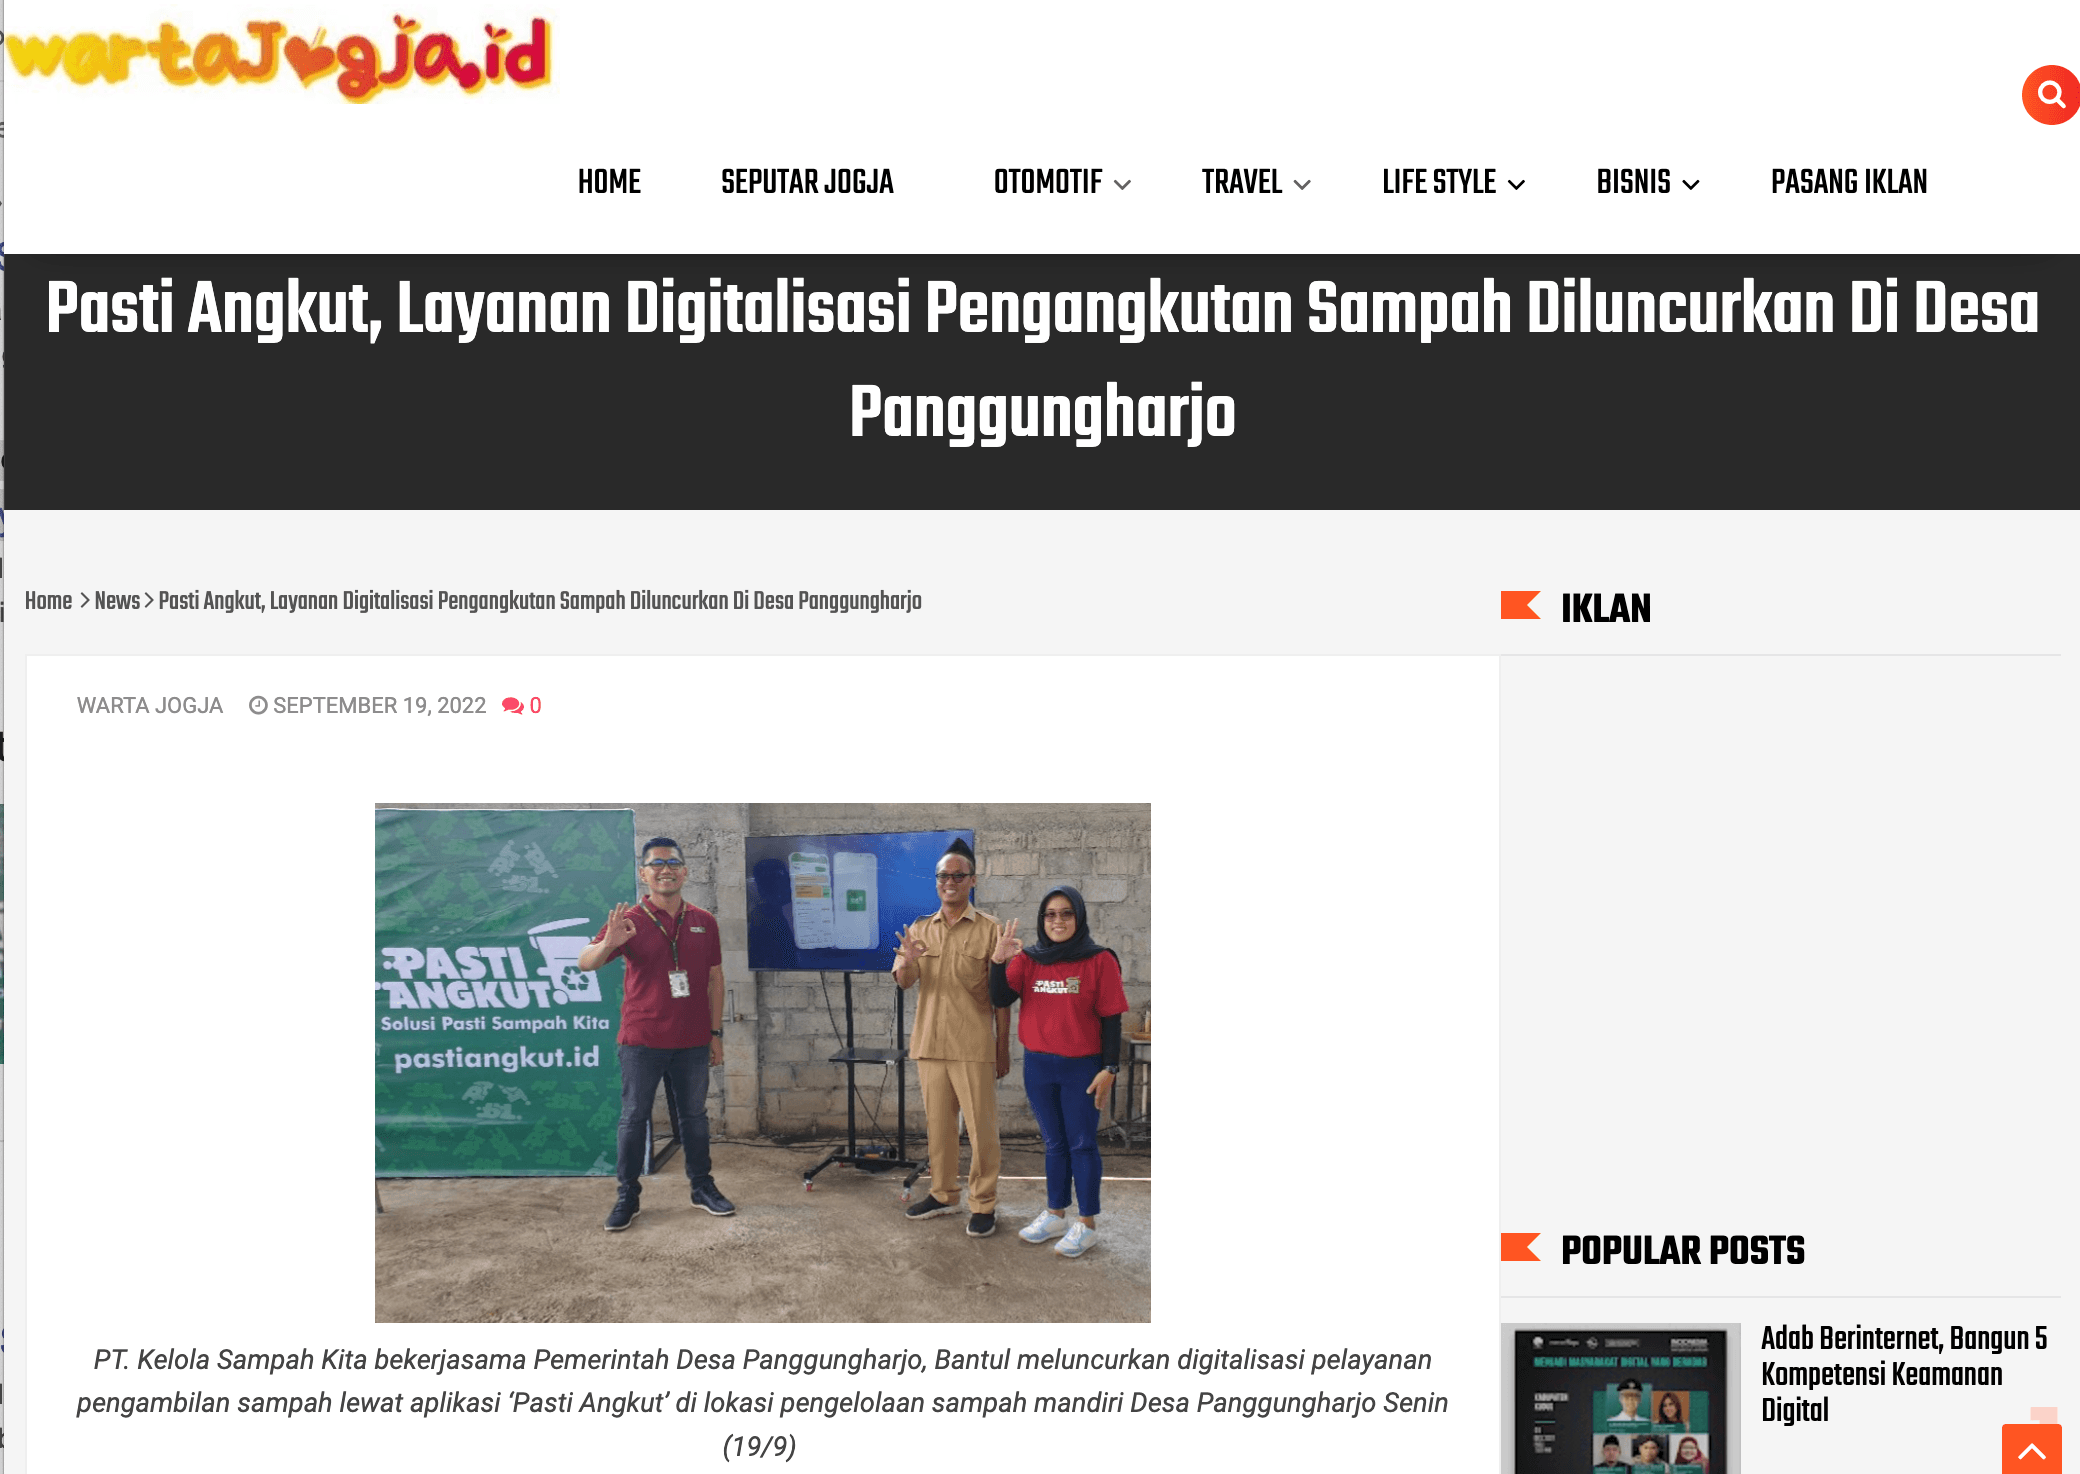 Pasti Angkut, Layanan Digitalisasi Pengangkutan Sampah Diluncurkan Di Desa Panggungharjo | Pasti Angkut